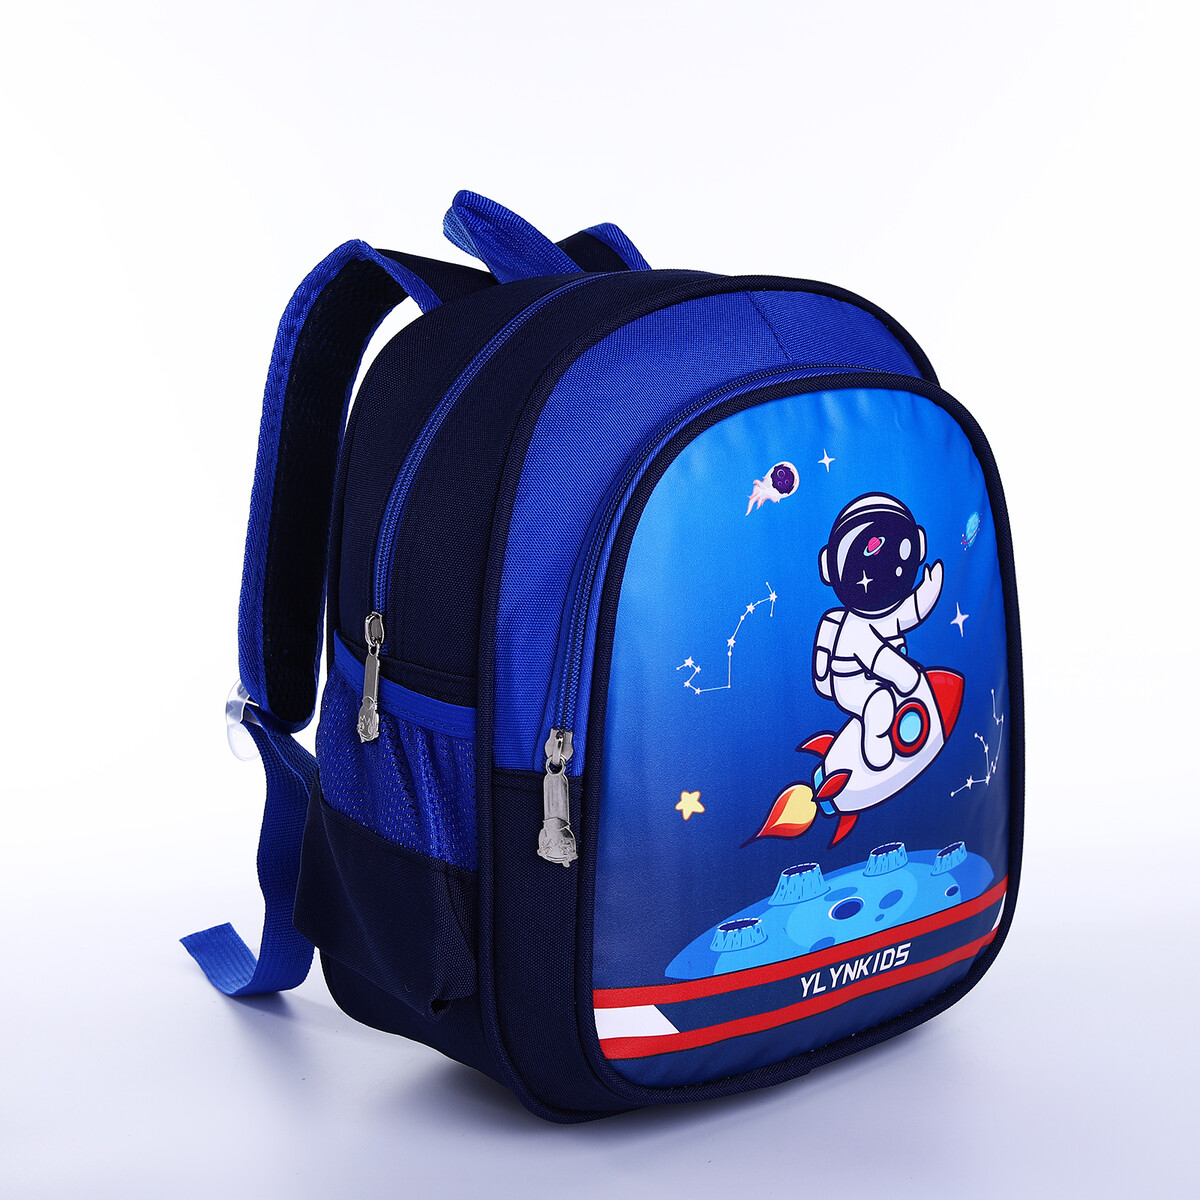 Рюкзак детский на молнии, 3 наружных кармана, цвет синий рюкзак на молнии с usb 4 наружных кармана сумка пенал синий